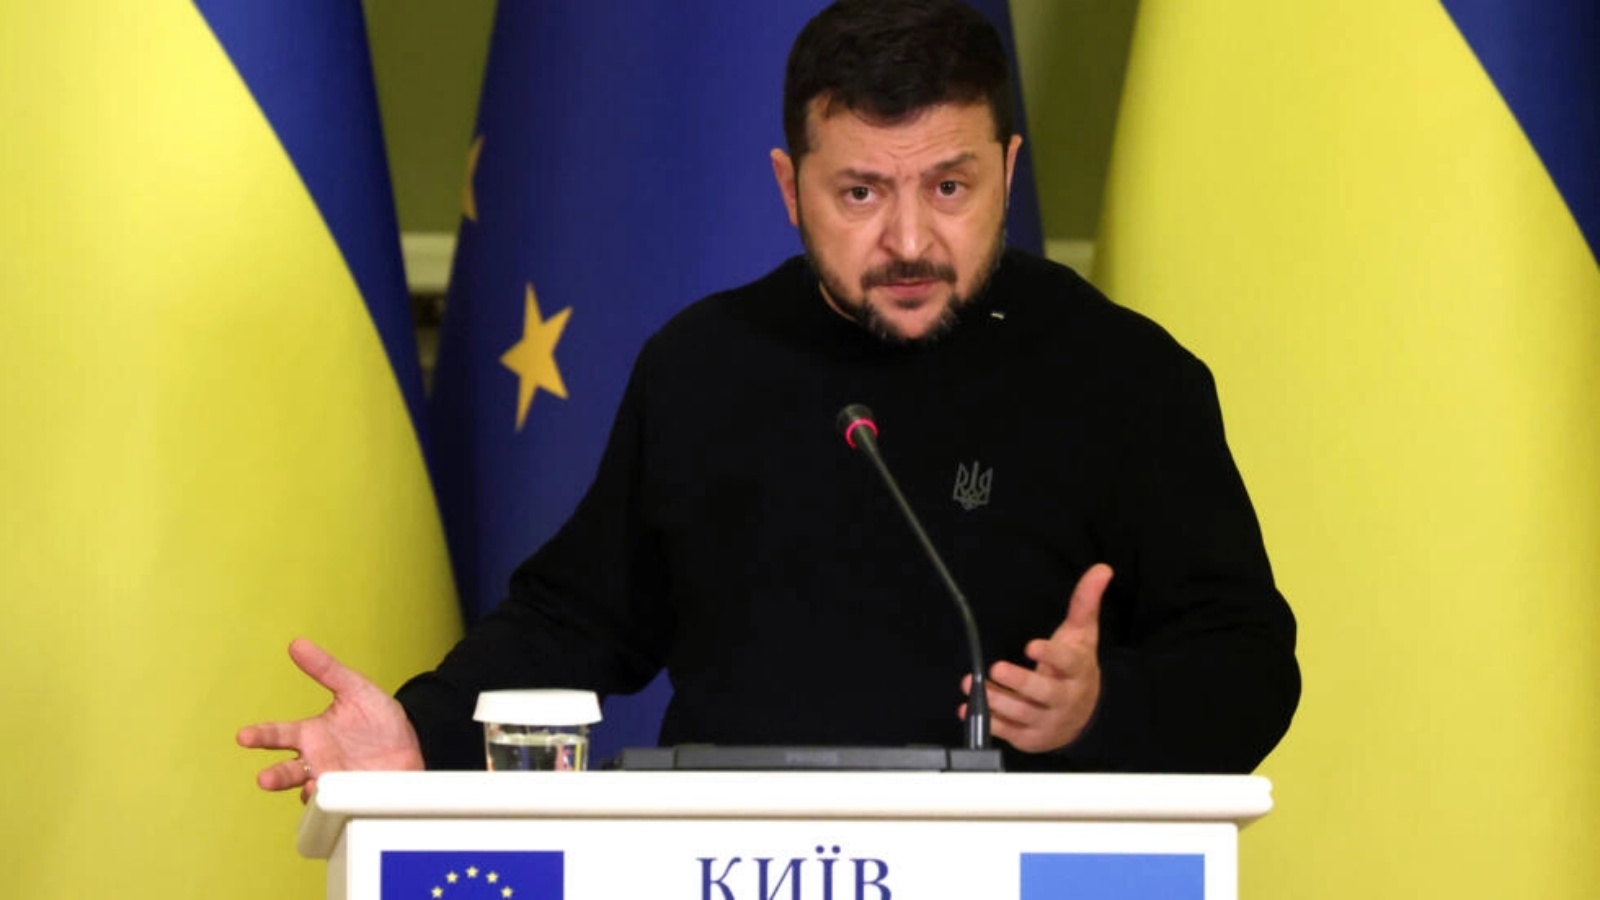  الرئيس الأوكراني فولوديمير زيلينسكي في كييف في الرابع من تشرين الثاني/نوفمبر 2023 الرئيس الأوكراني فولوديمير زيلينسكي في كييف في الرابع من نوفمبر 2023 